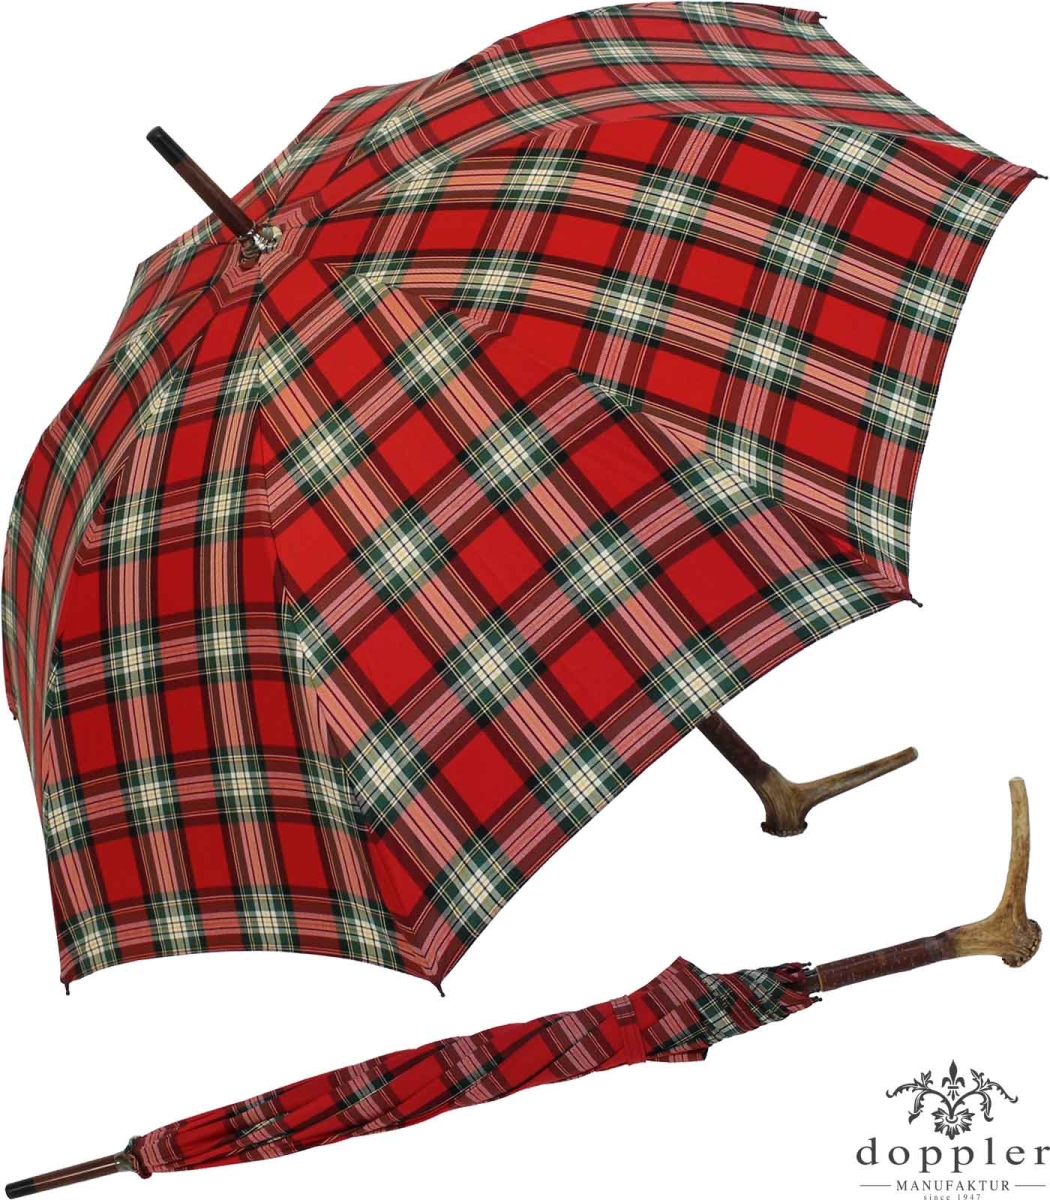 Regenschirm Doppler mit Hirschhorngriff Baumwolle Karo - rot, 259,00 €